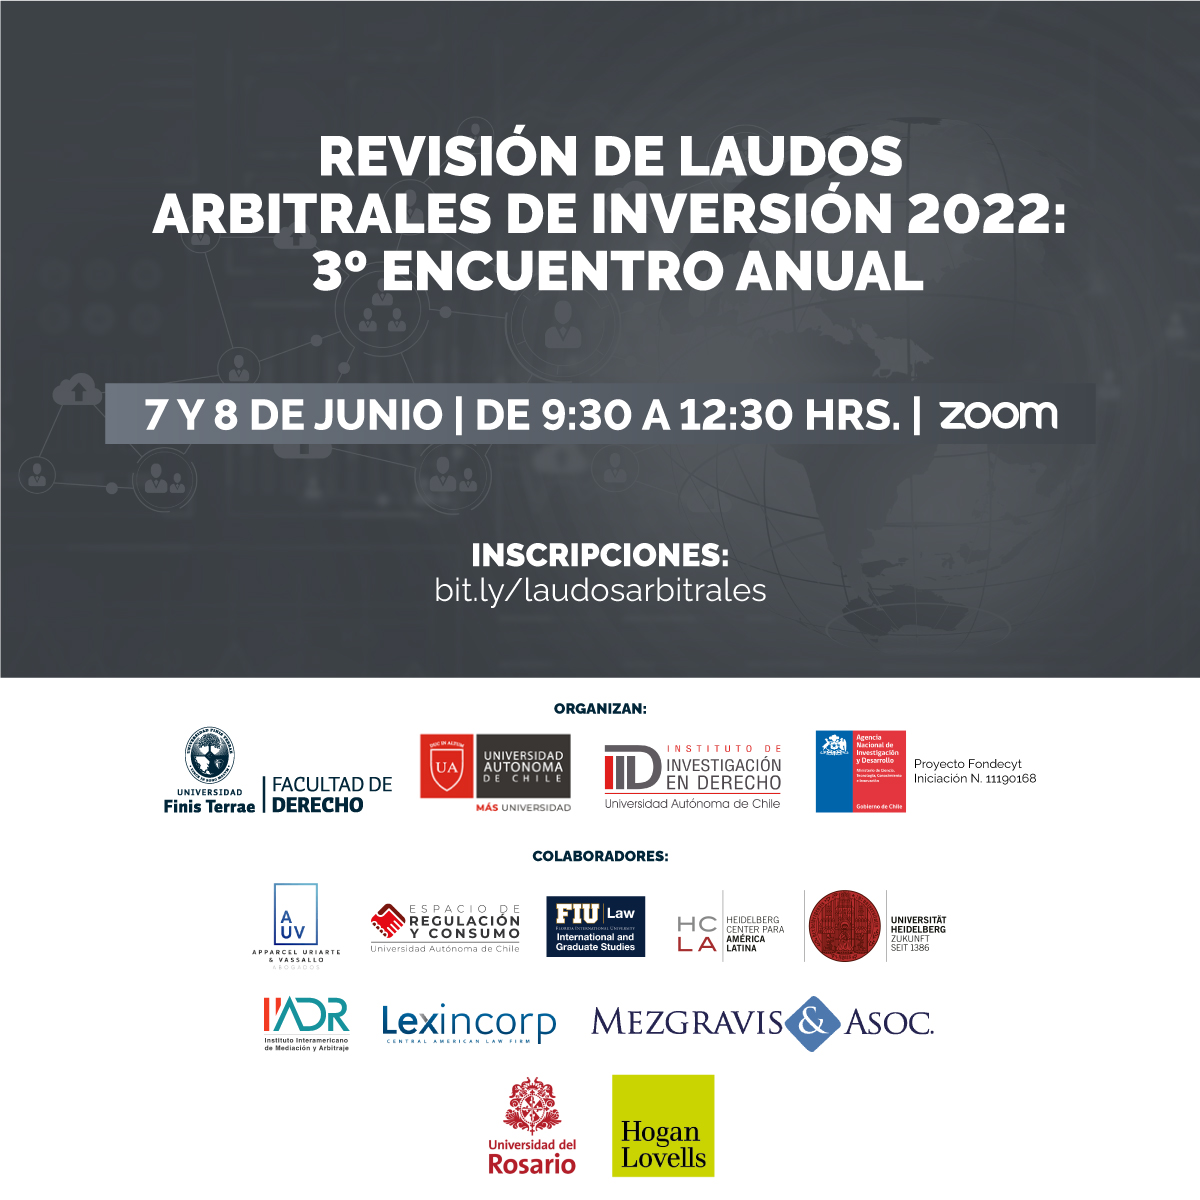 Facultades de Derecho U. Finis Terrae y U. Autónoma invitan a seminario "Revisión de laudos arbitrales de inversión 2022: 3º encuentro anual".